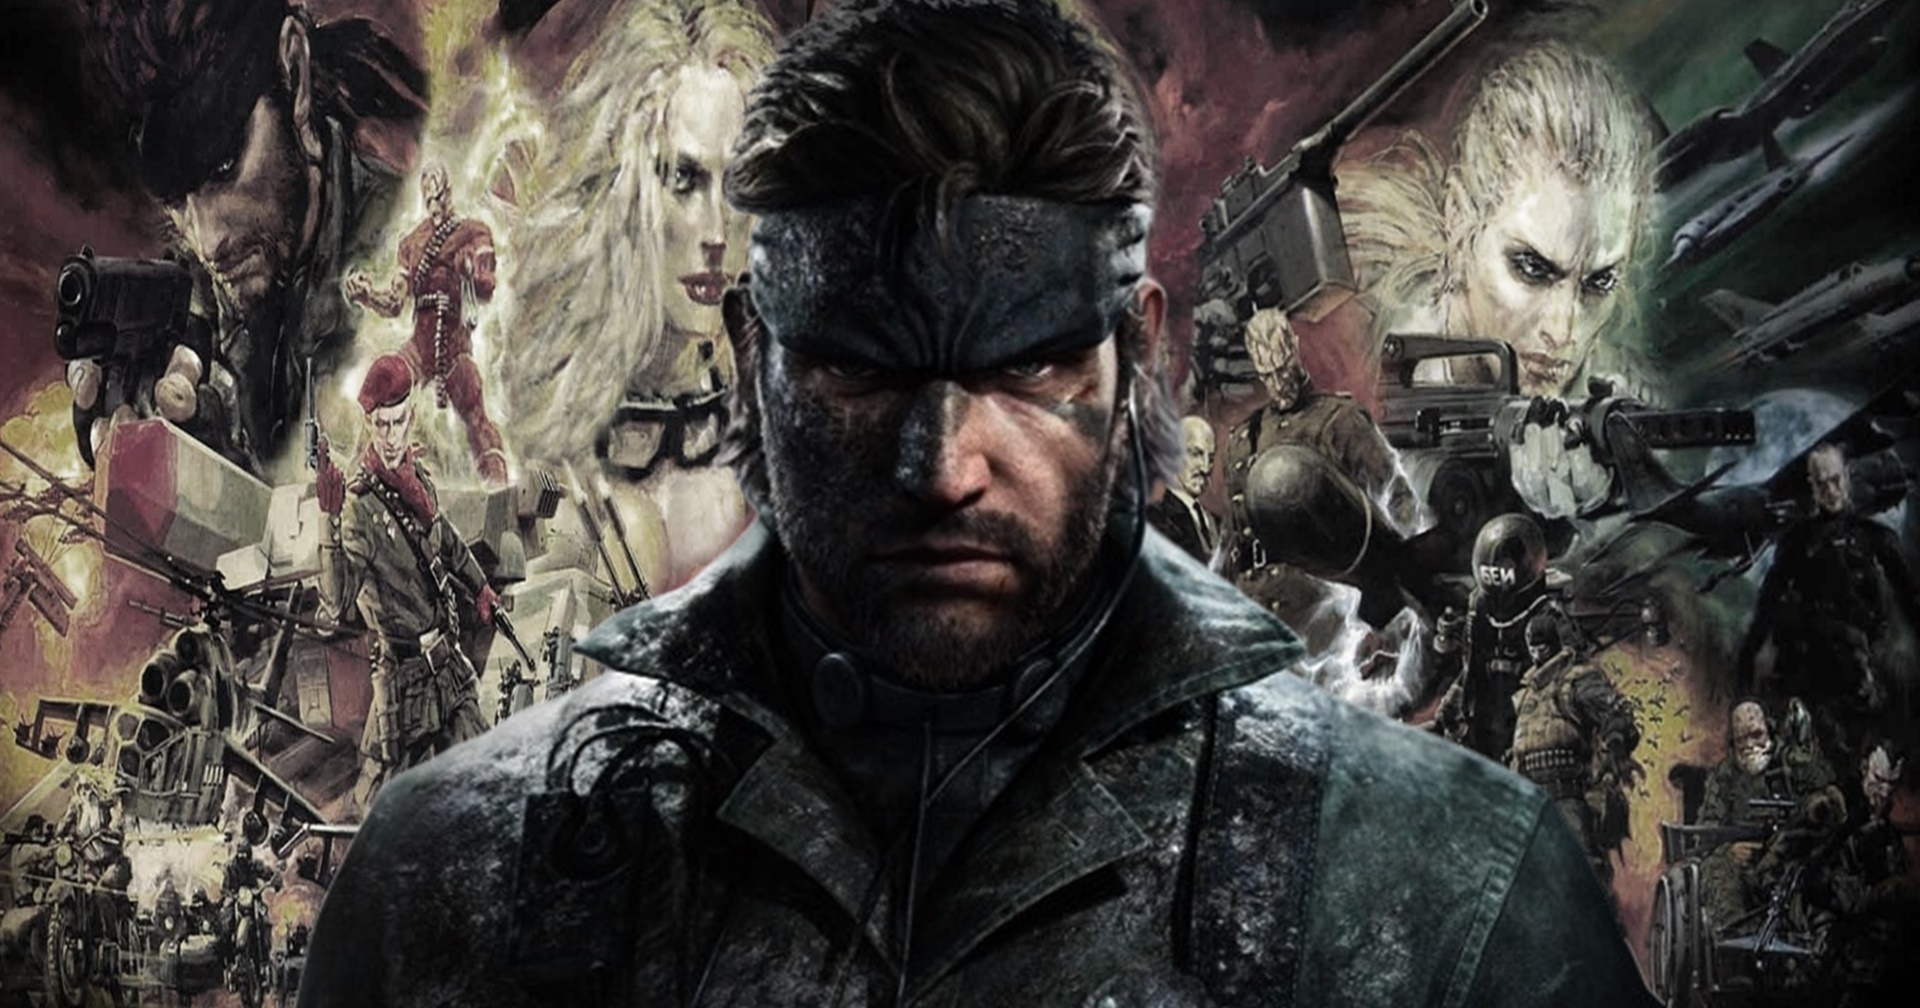 ทำความรู้จัก Metal Gear Solid Δ Snake Eater ตำนานไม่มีวันตายที่กลับมาอีกครั้ง